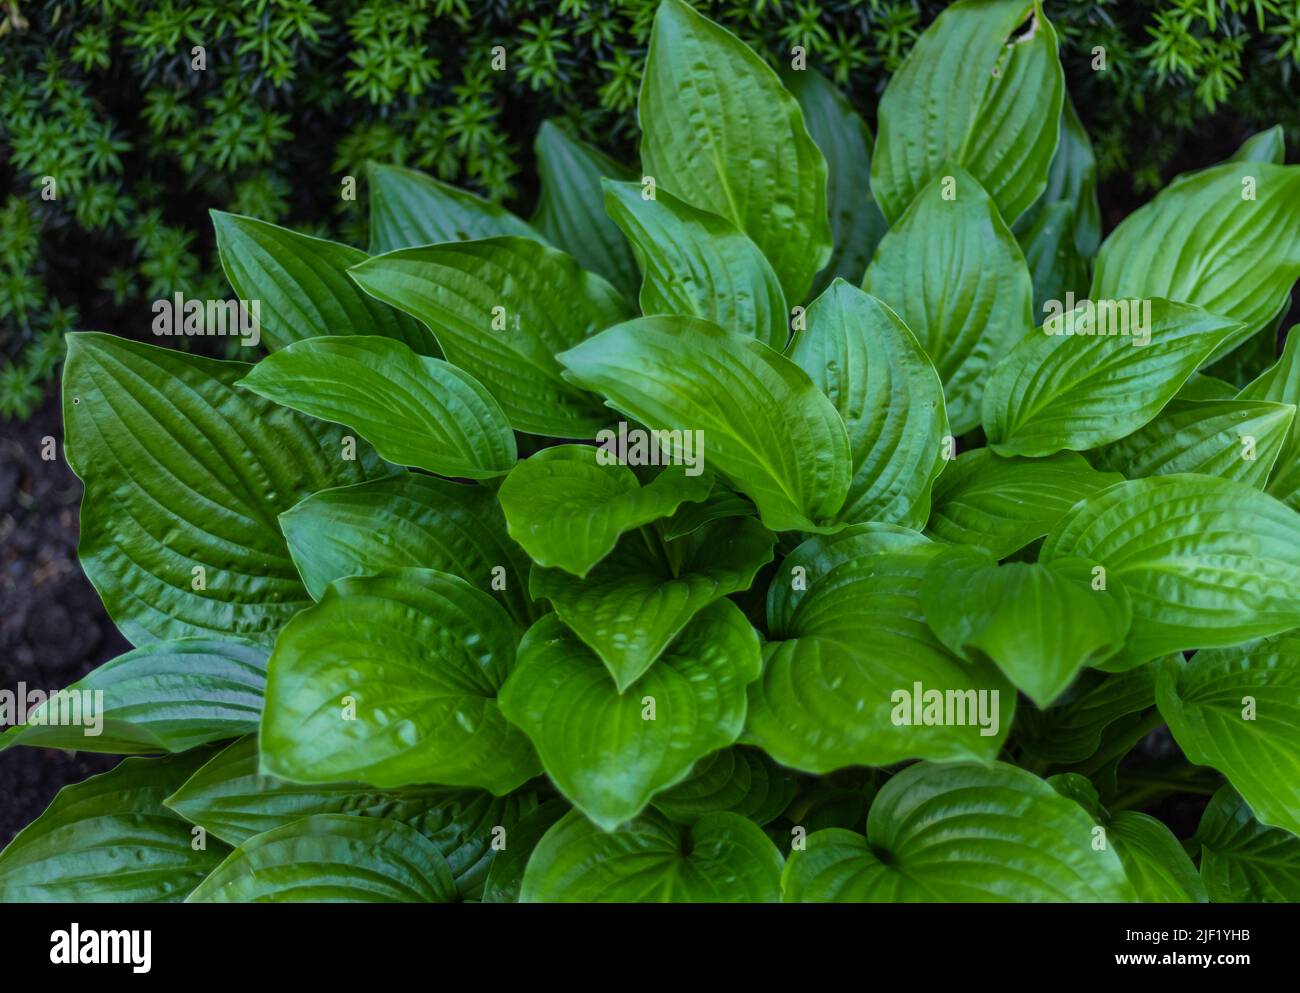 Hosta Funkia, Kochelilien im Garten. Nahaufnahme der grünen Blätter einer Pflanze Hosta. Selektiver Fokus, niemand Stockfoto